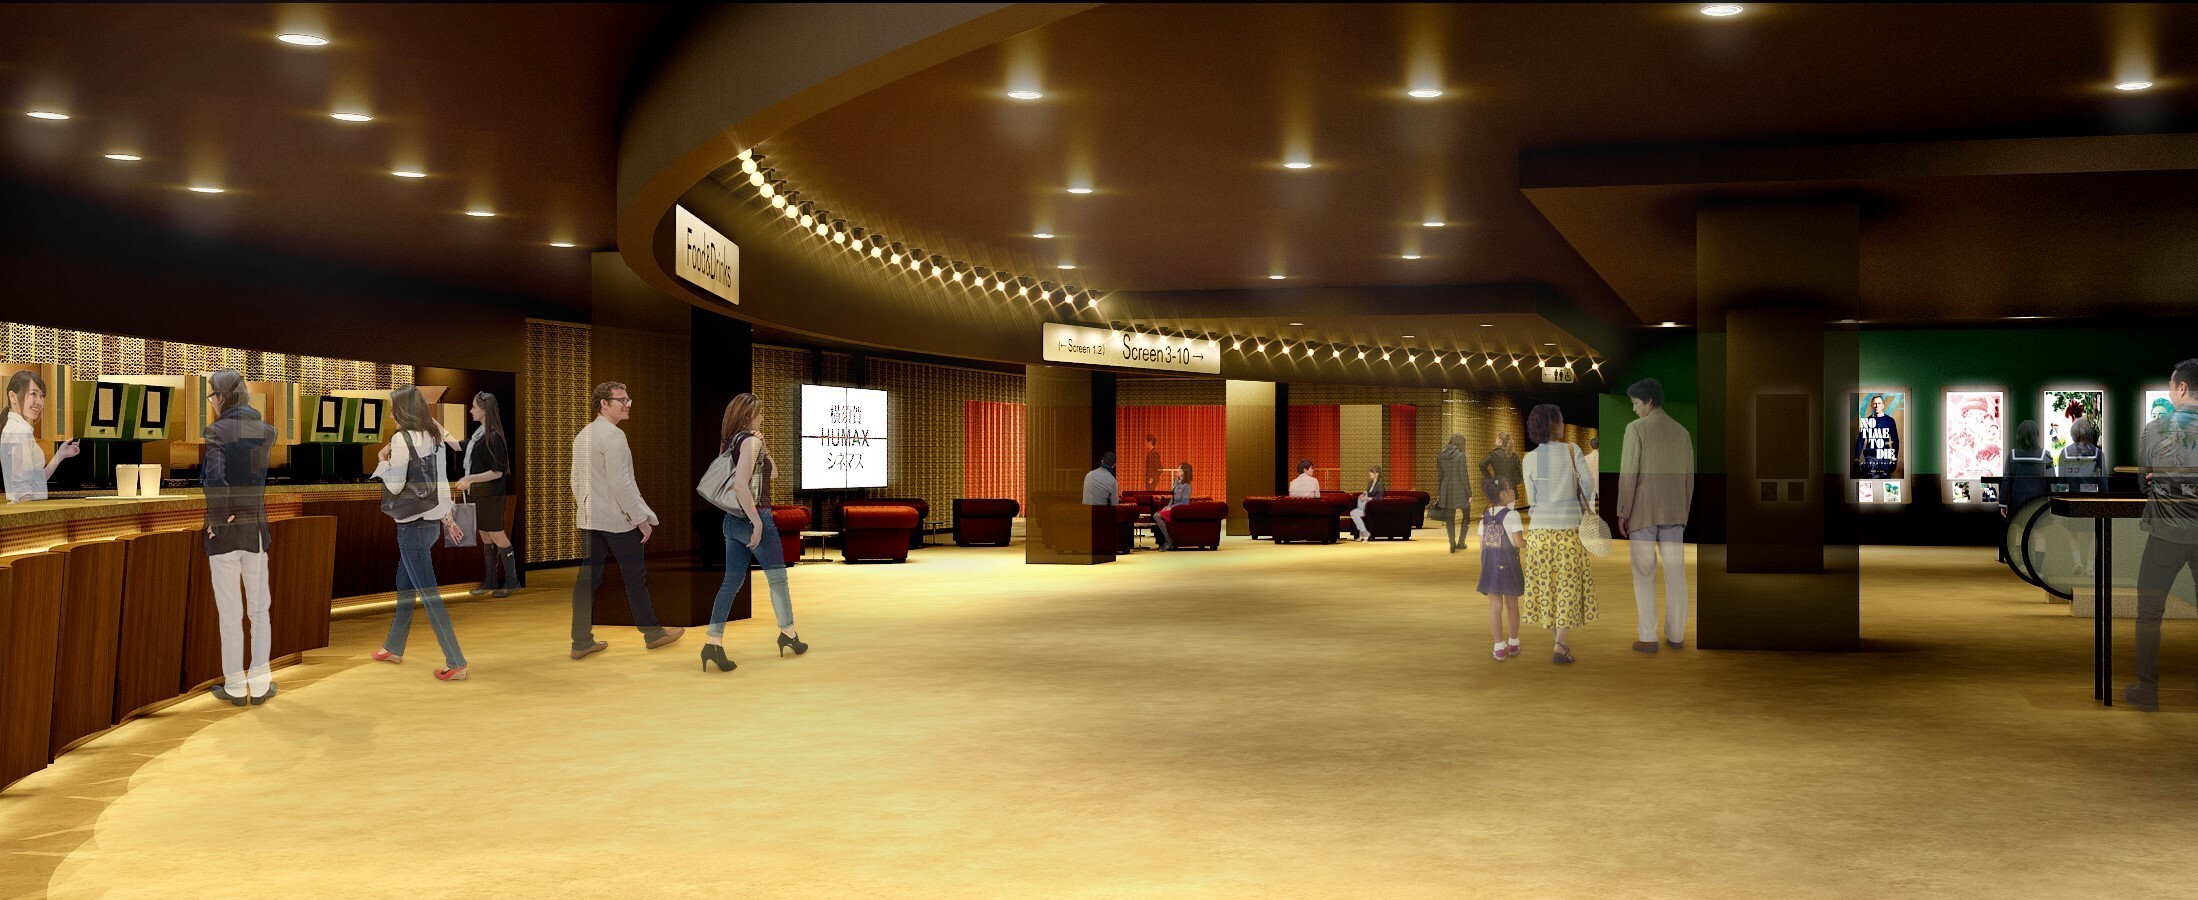 横須賀humaxシネマズ リニューアルオープン コンセプトは Jazz 型にはまらない 自由で変化し続ける映画館 として生まれ変わります 株式会社ヒューマックスシネマのプレスリリース